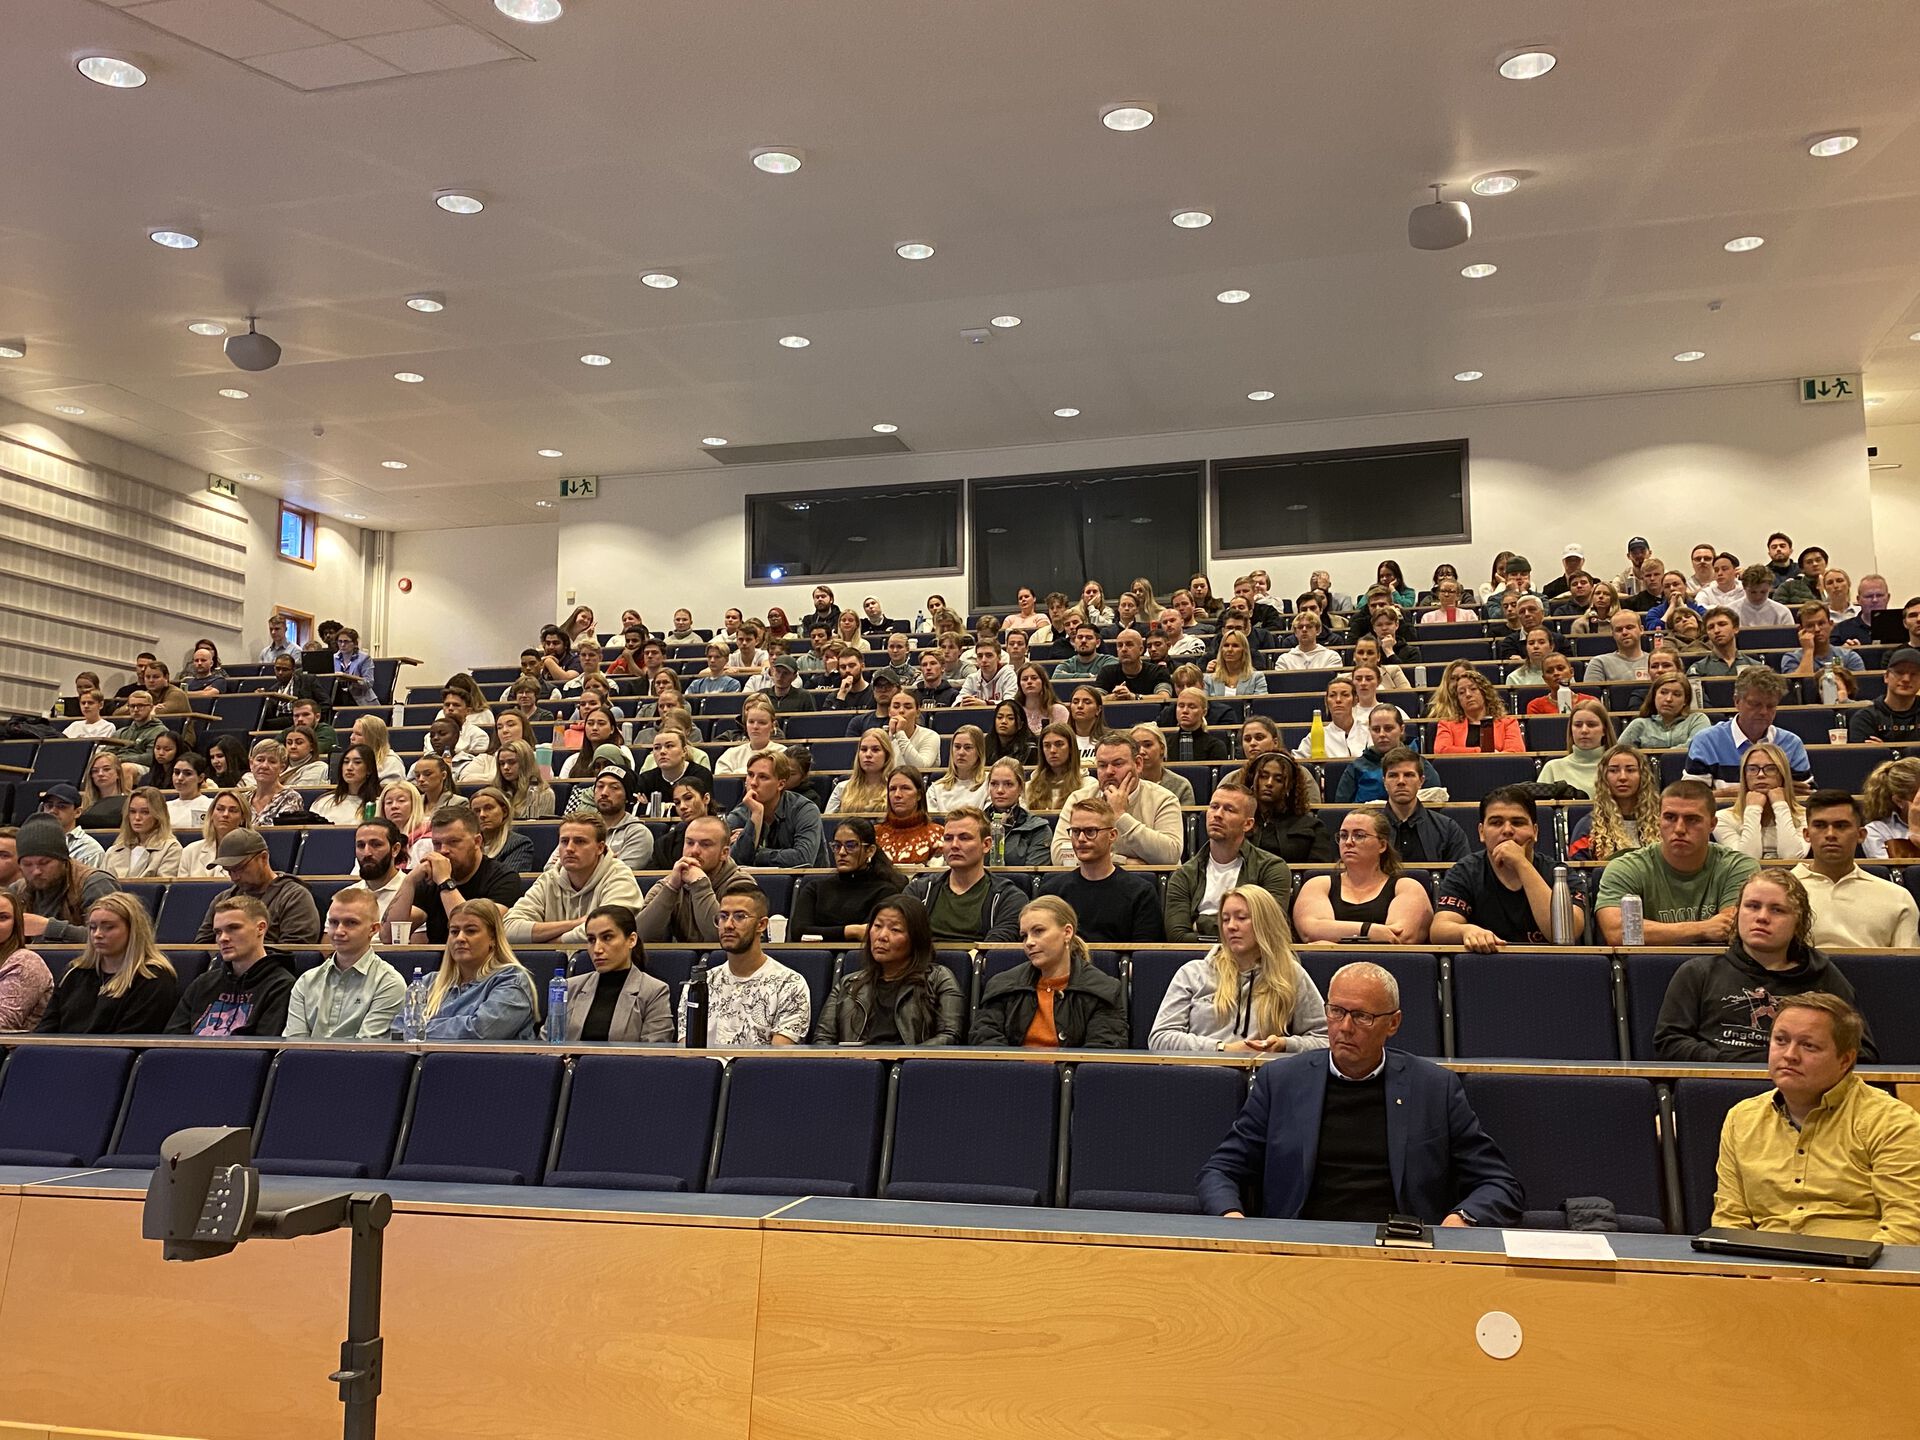 Bilde av forelesningssal med nye studenter